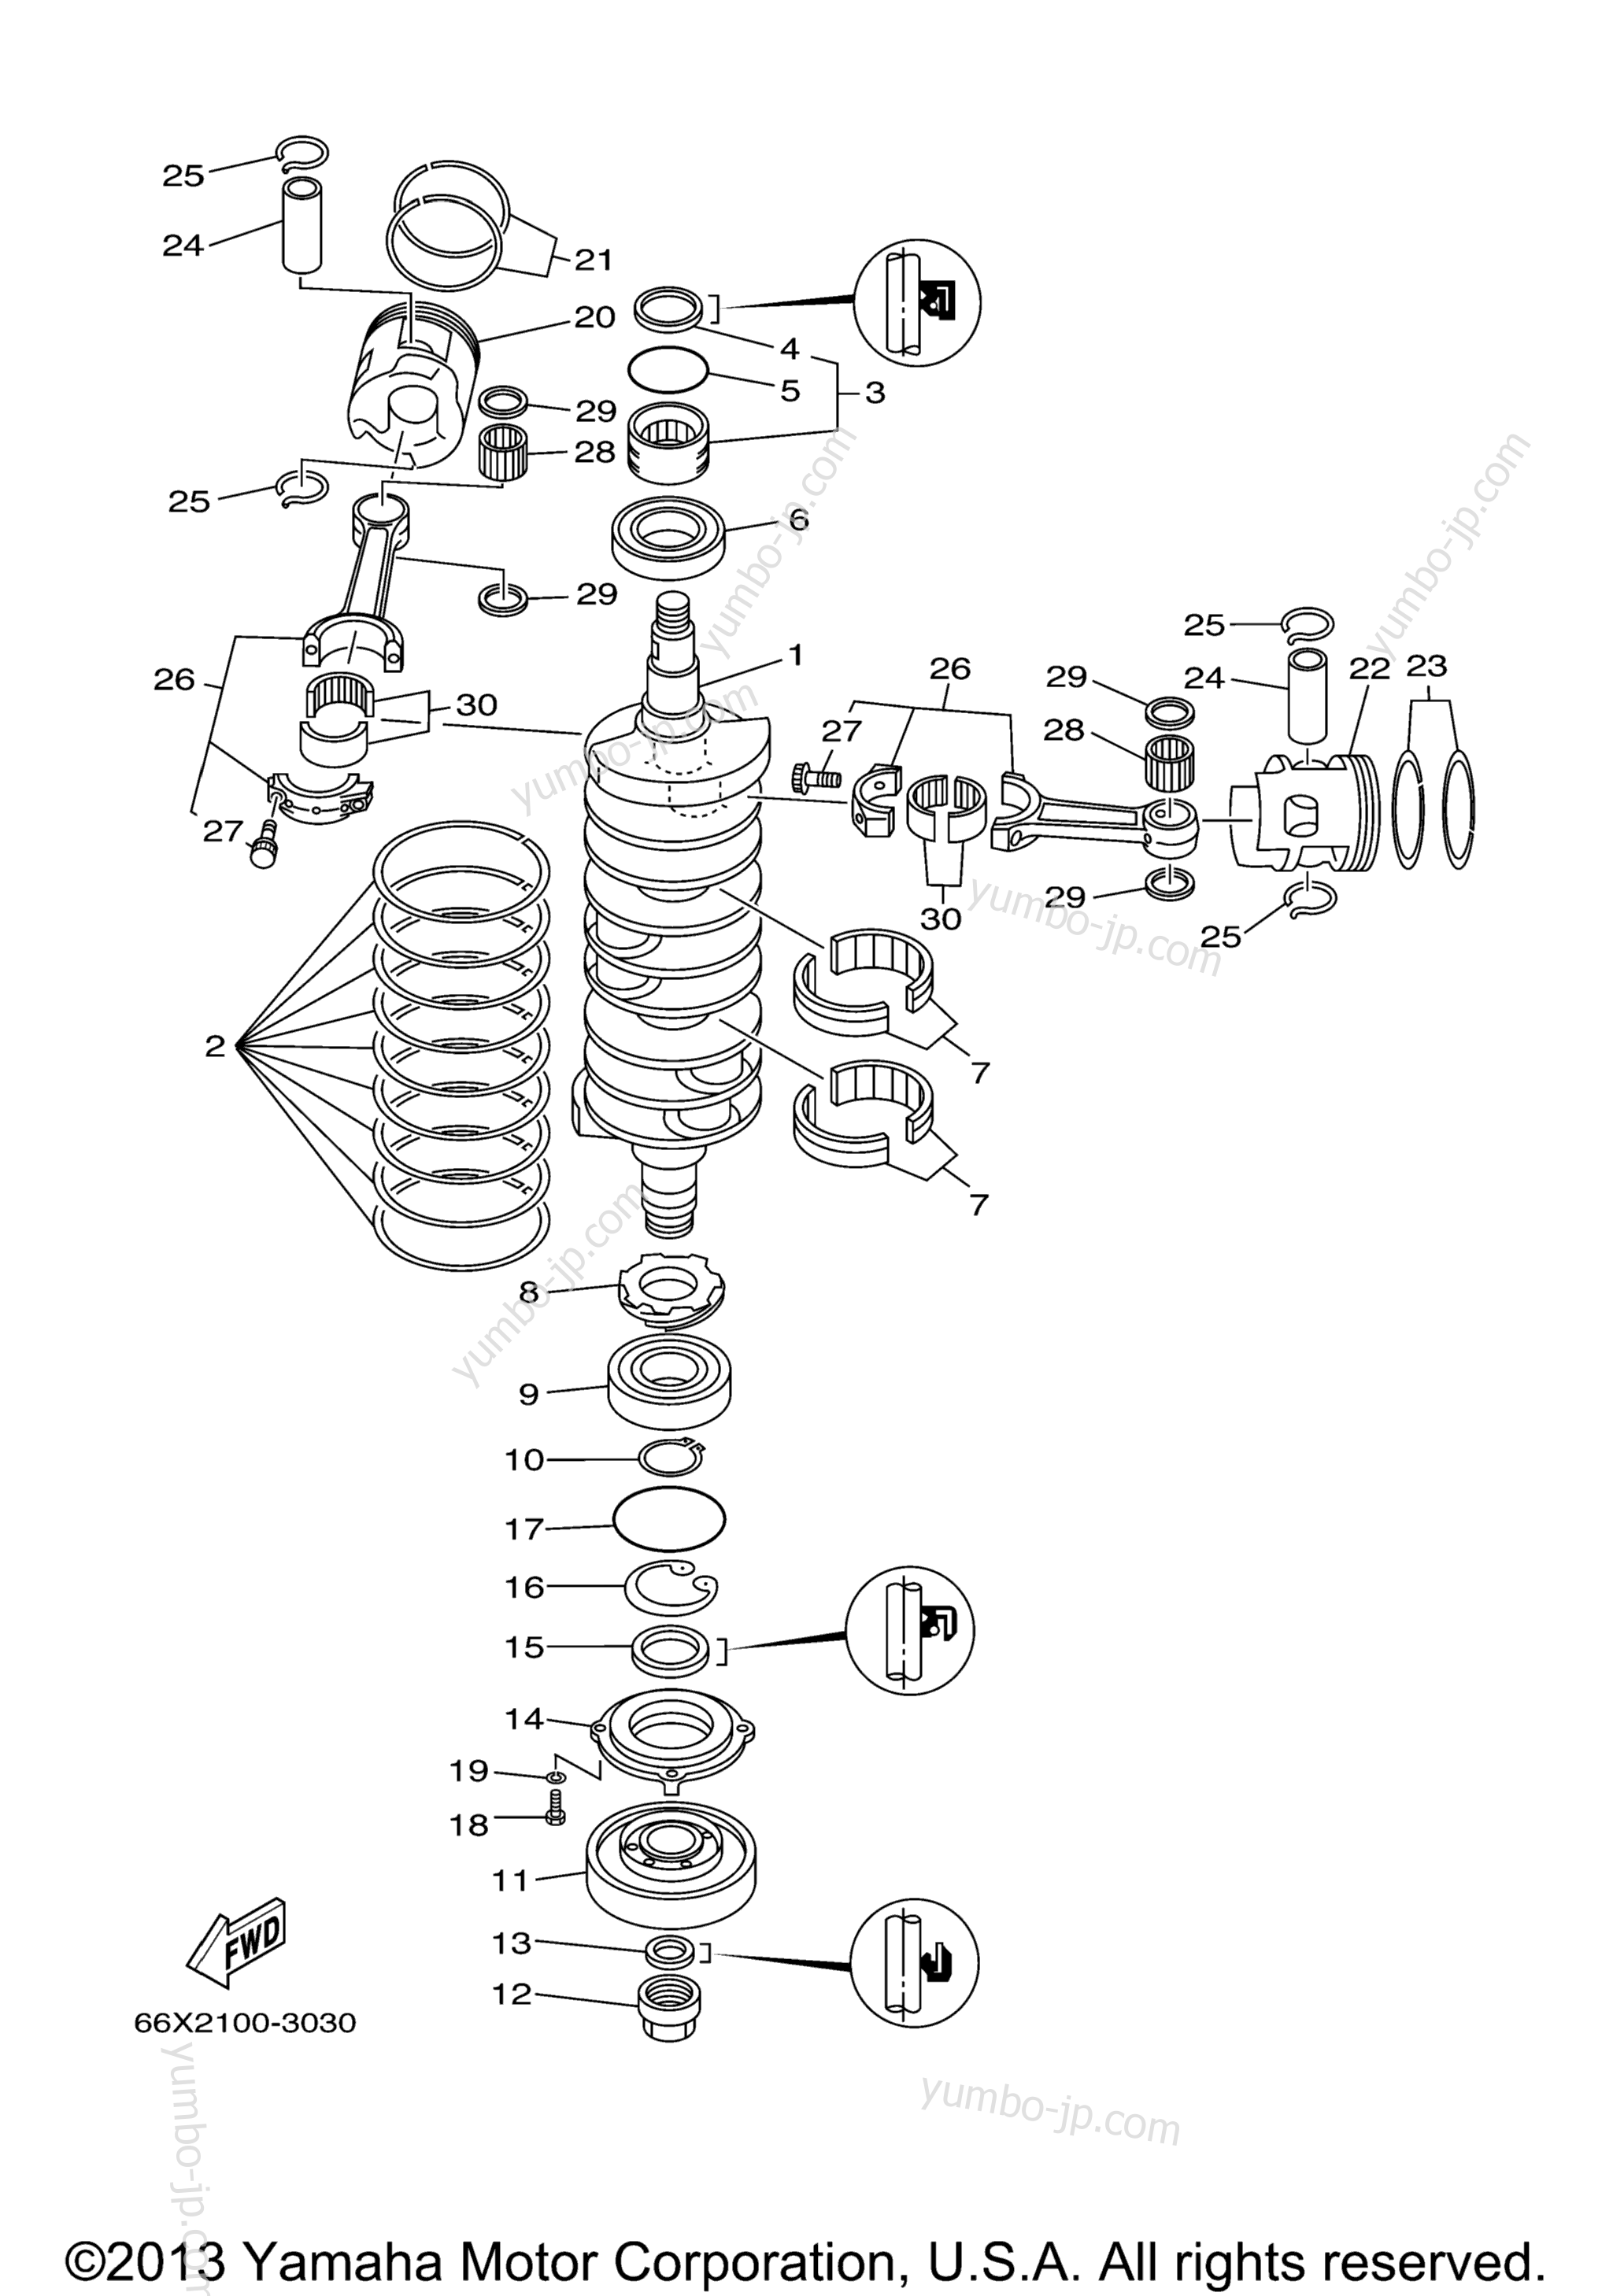 Коленвал и поршневая группа для лодочных моторов YAMAHA LX225_250TXRB (LX225TXRB) 2003 г.